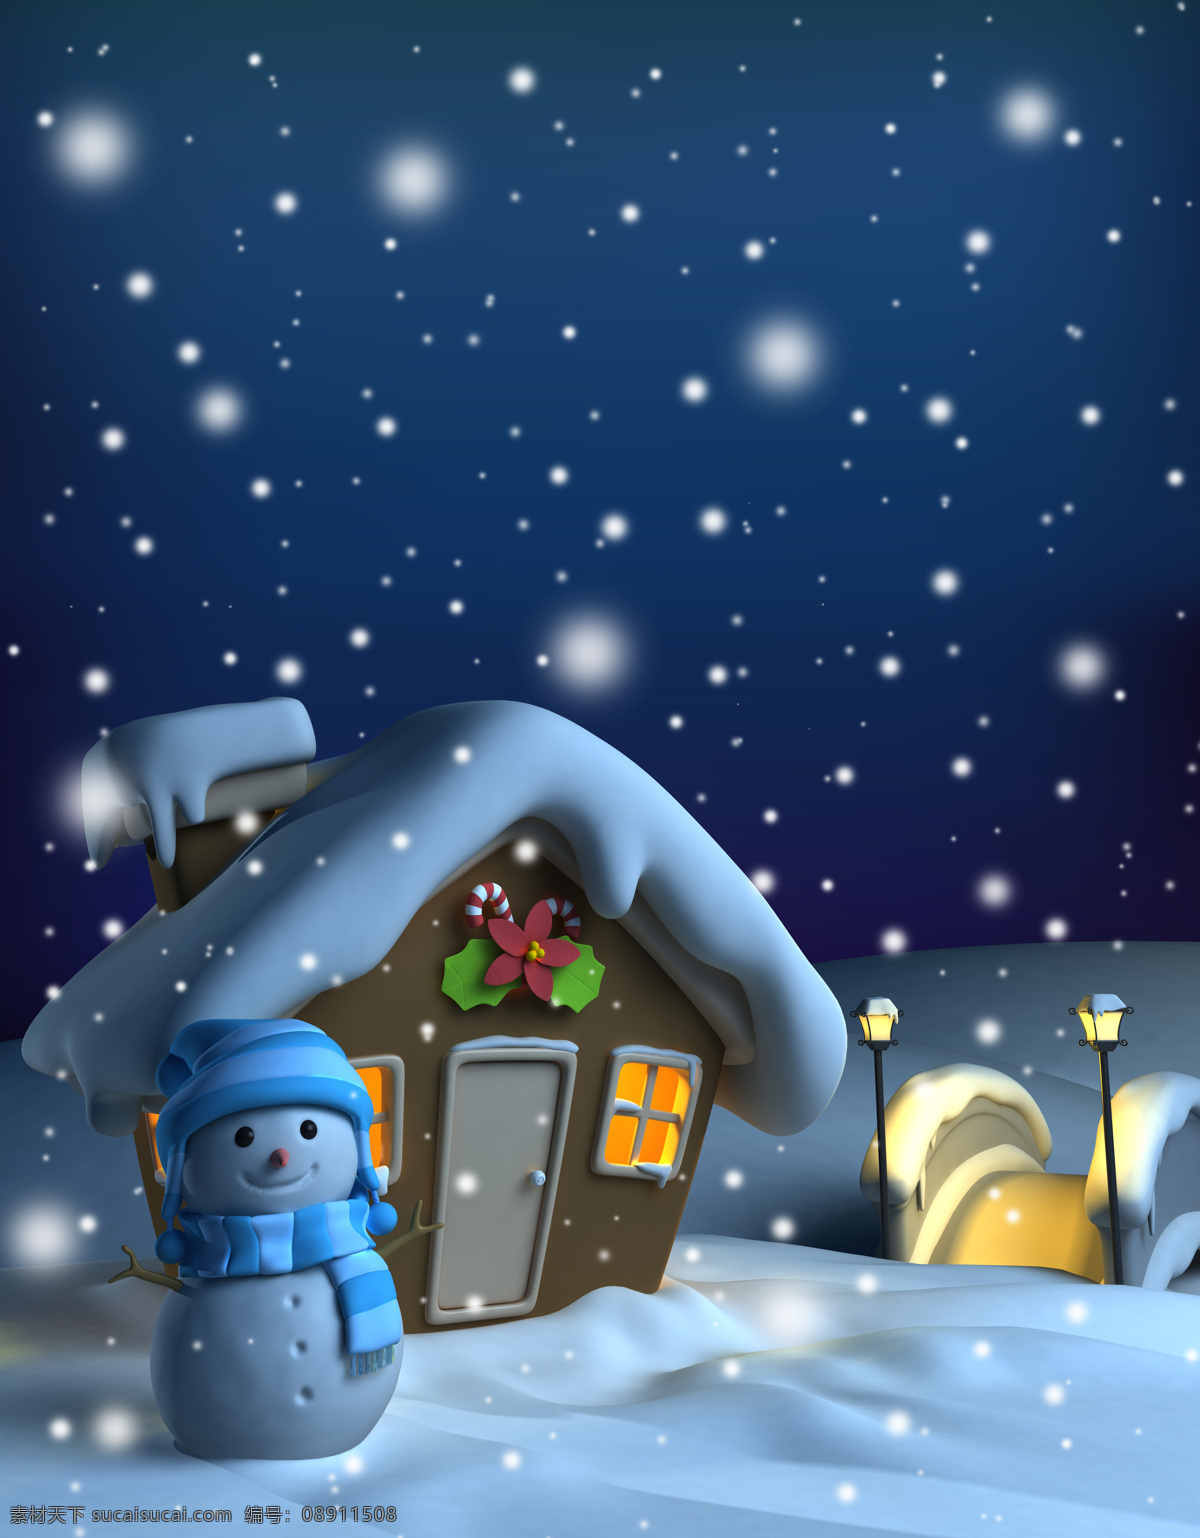 雪地 上 雪人 房屋 卡通画 白雪 路灯 雪景 圣诞节 节日庆典 生活百科 蓝色